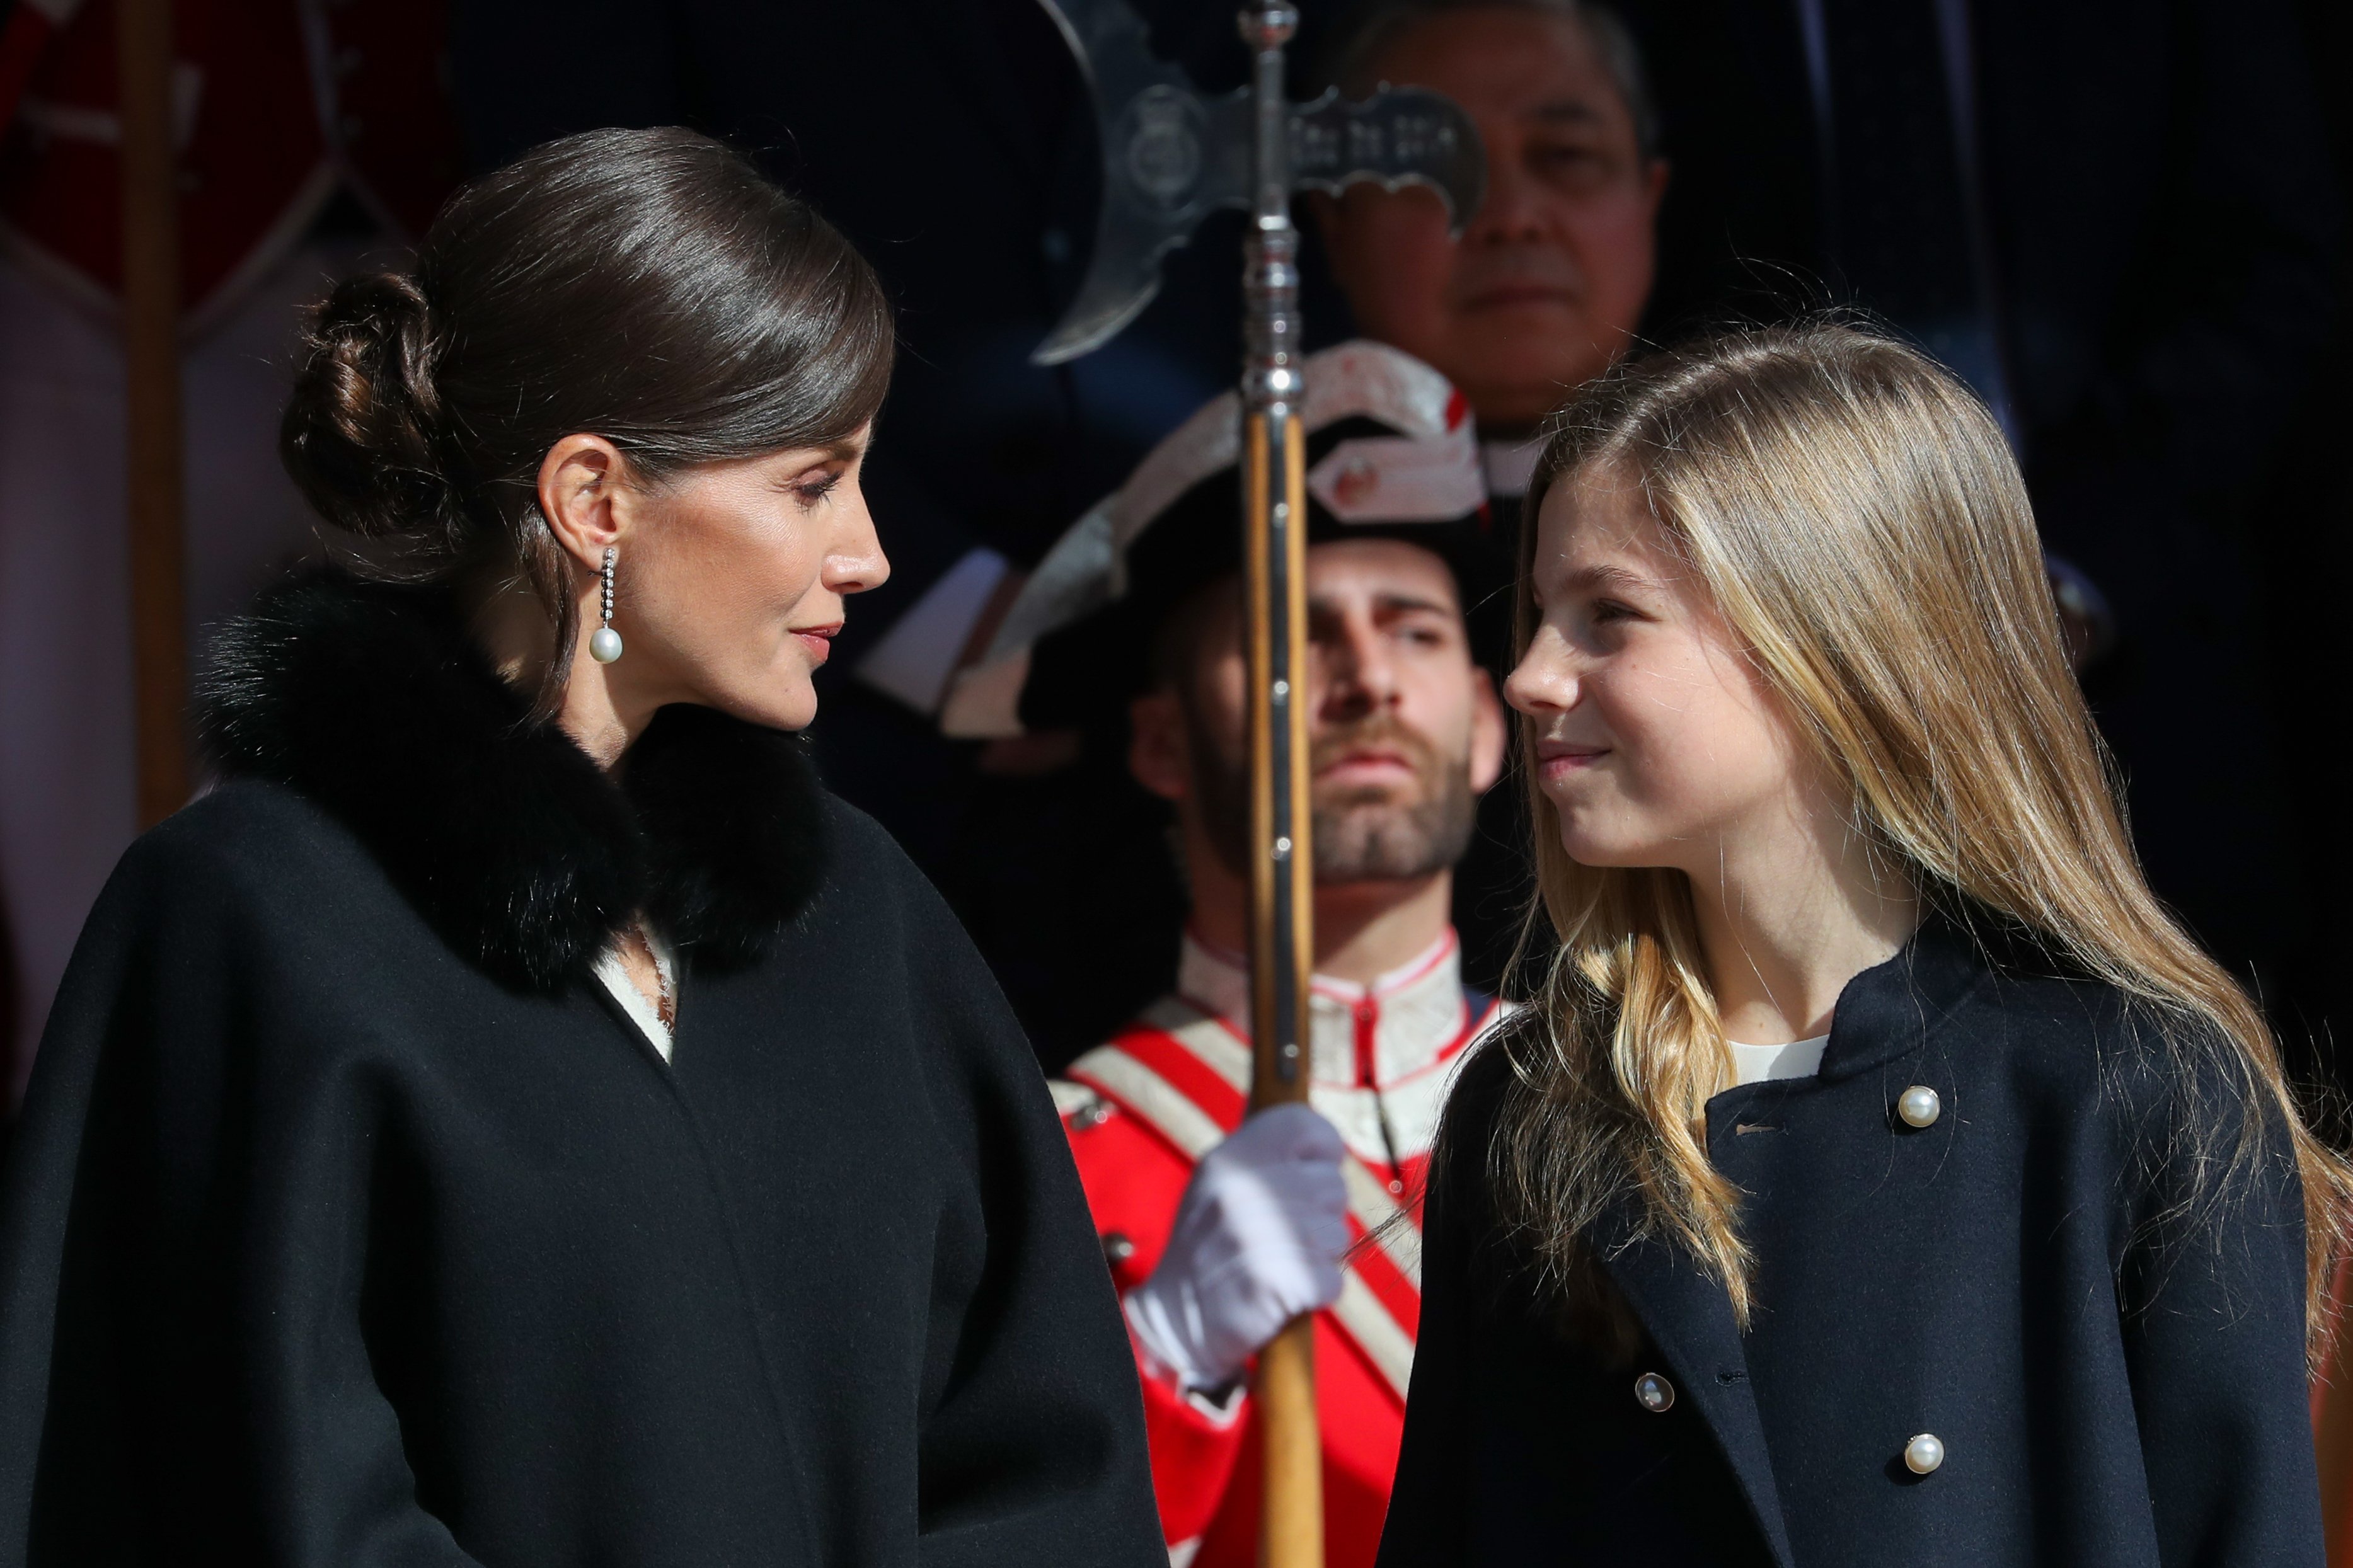 La infanta Sofia ja és tan alta com Letícia: foto inèdita de carrer, juntes